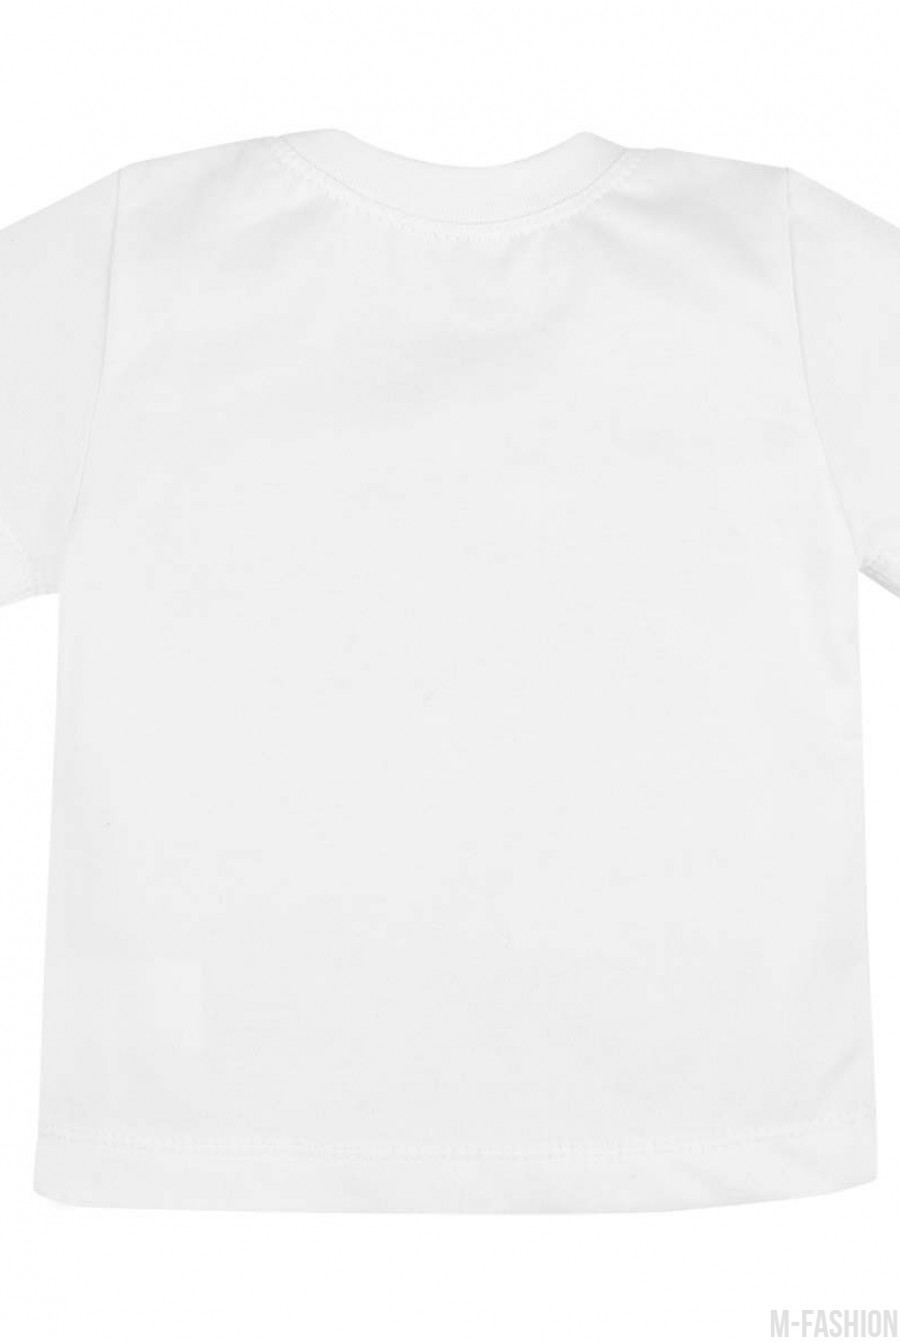 Белая хлопковая футболка с возможностью индивидуальной печати имени и цифры (1 или 2) на принте- Фото 4